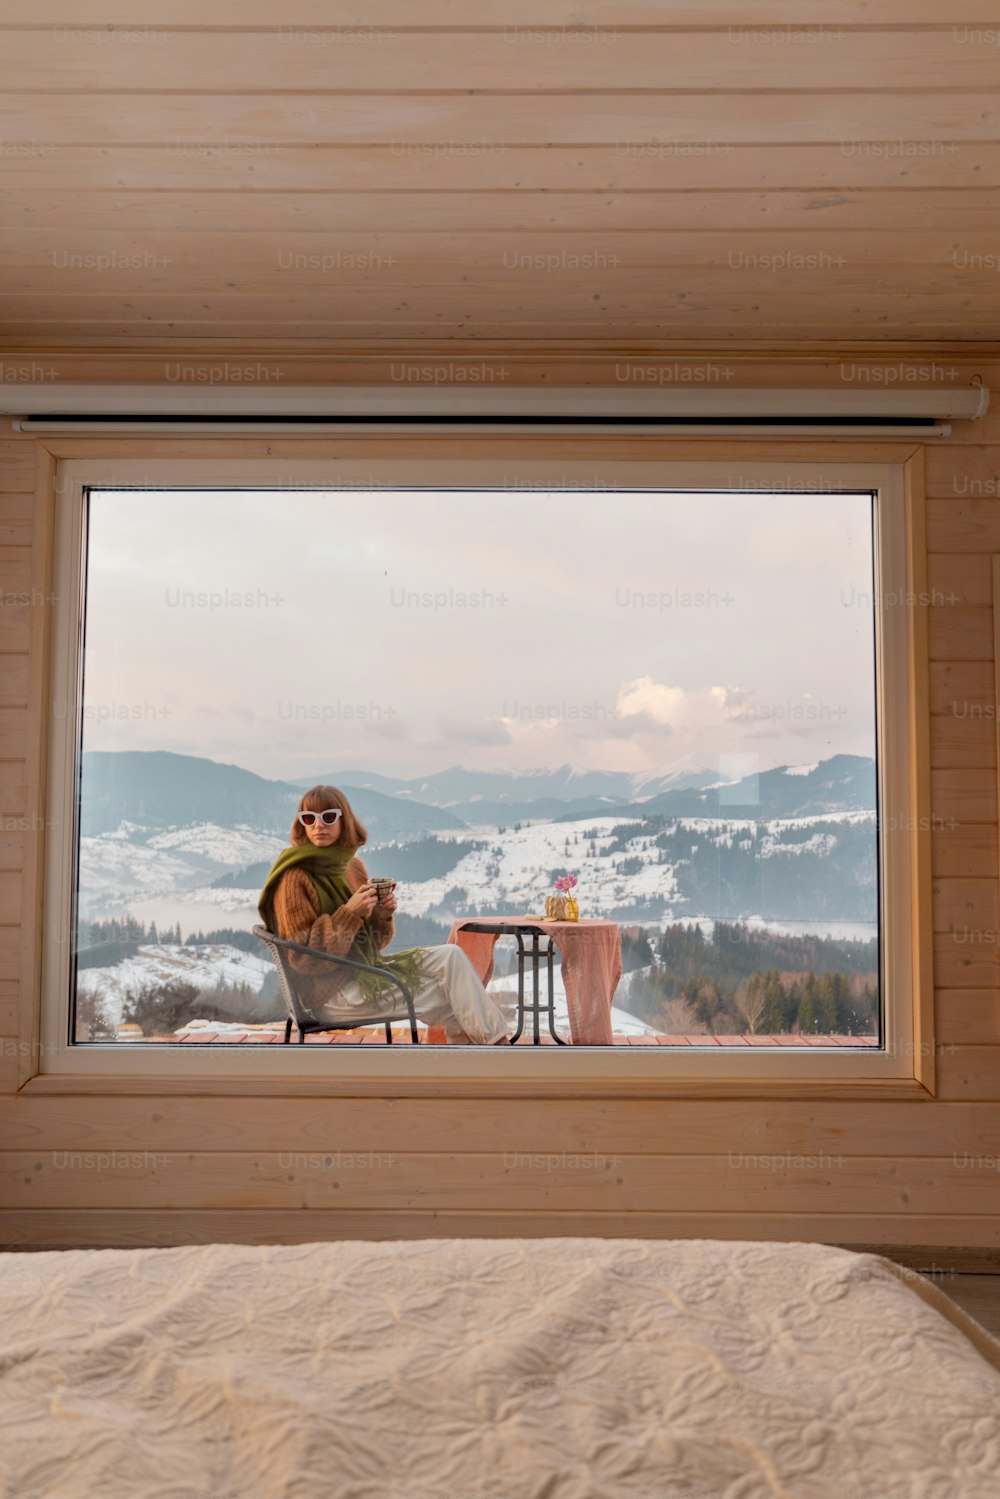 Frau sitzt mit einem Drink auf der Terrasse des winzigen Hauses in den Bergen, Blick durch das Fenster von innen. Konzept der kleinen modernen Kabinen für Ruhe und Flucht in die Natur